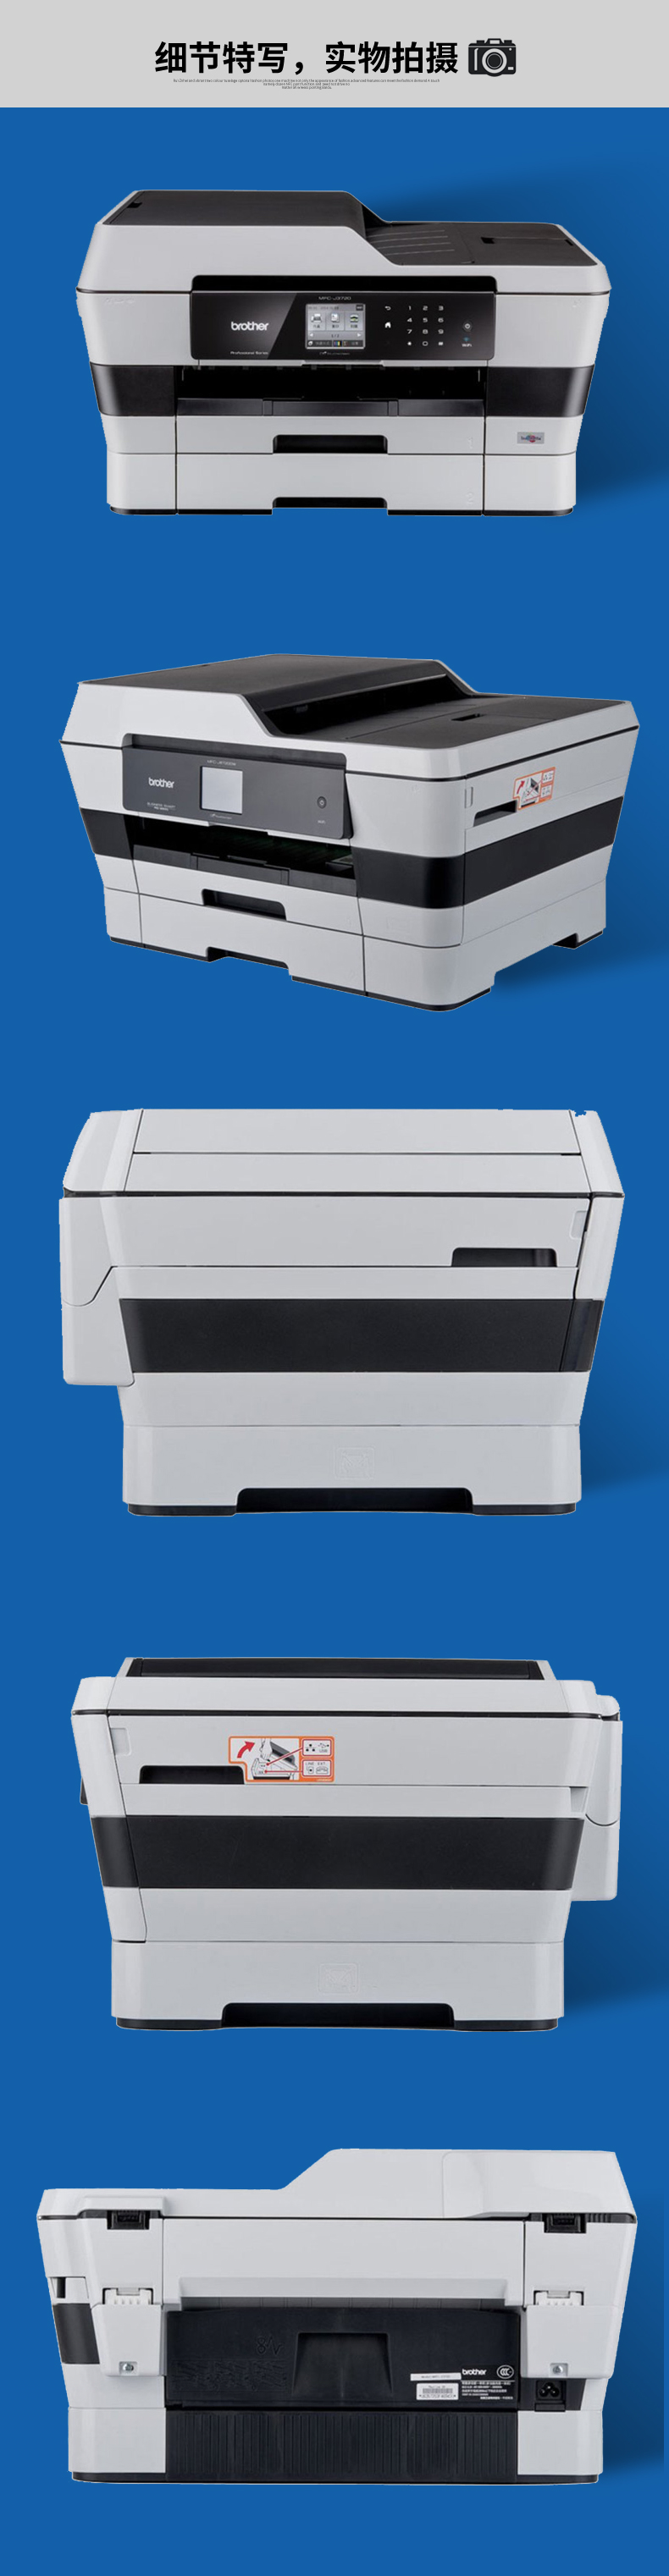 兄弟彩色喷墨A3多功能一体机MFC-J3720 打印 复印 扫描 传真A3彩色喷墨 无线网络打印 自动双面打印 双纸盒